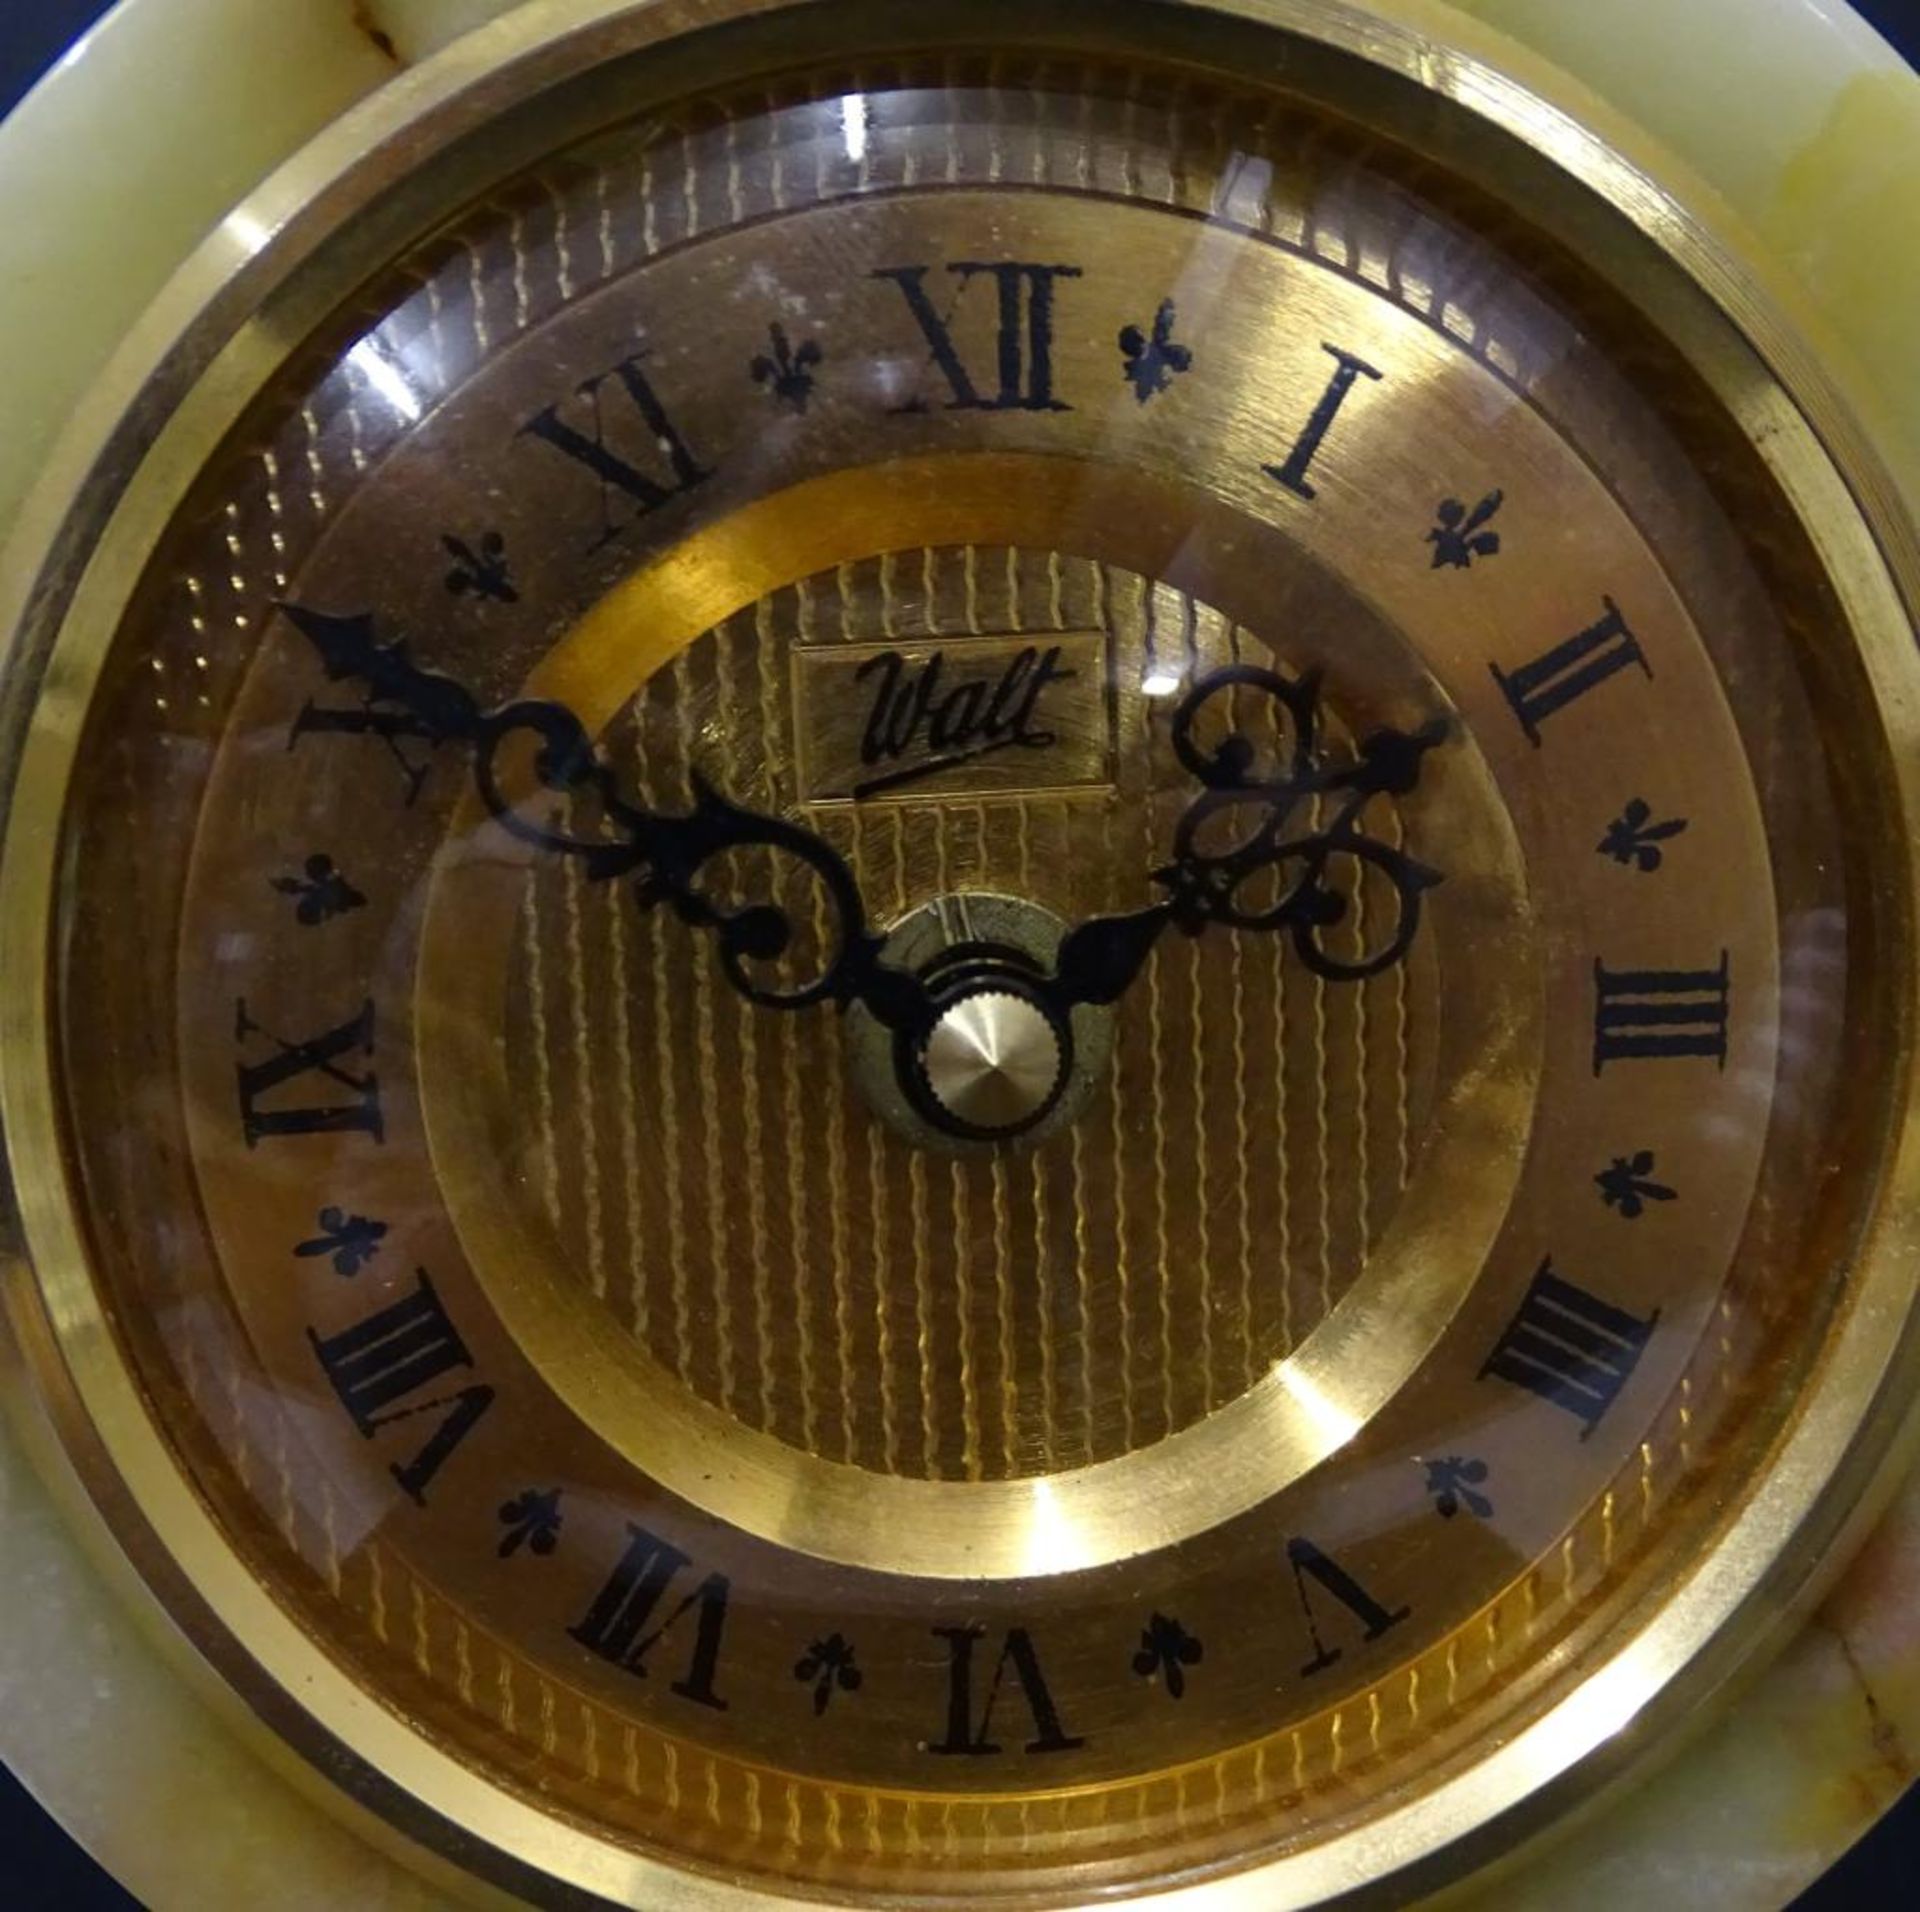 Portal-Uhr "Walt", Onyxgehäuse, H-32 cm, B-26 cm, Funktion nicht geprü - Bild 4 aus 5